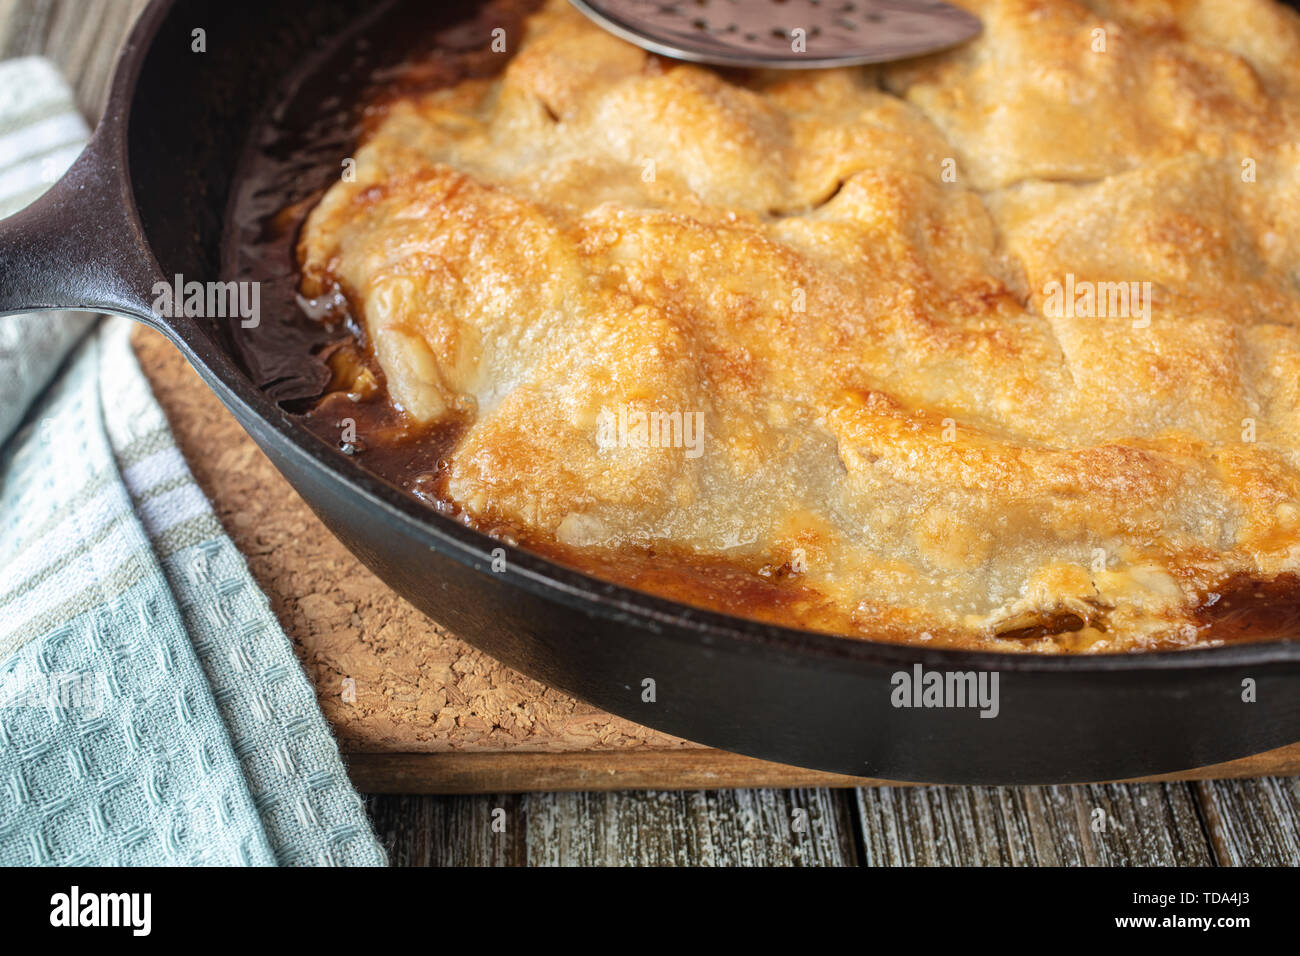 Apfelkuchen gebacken in einer gusseisernen Pfanne mit Butter Caramel Sauce  und goldene Kruste Stockfotografie - Alamy